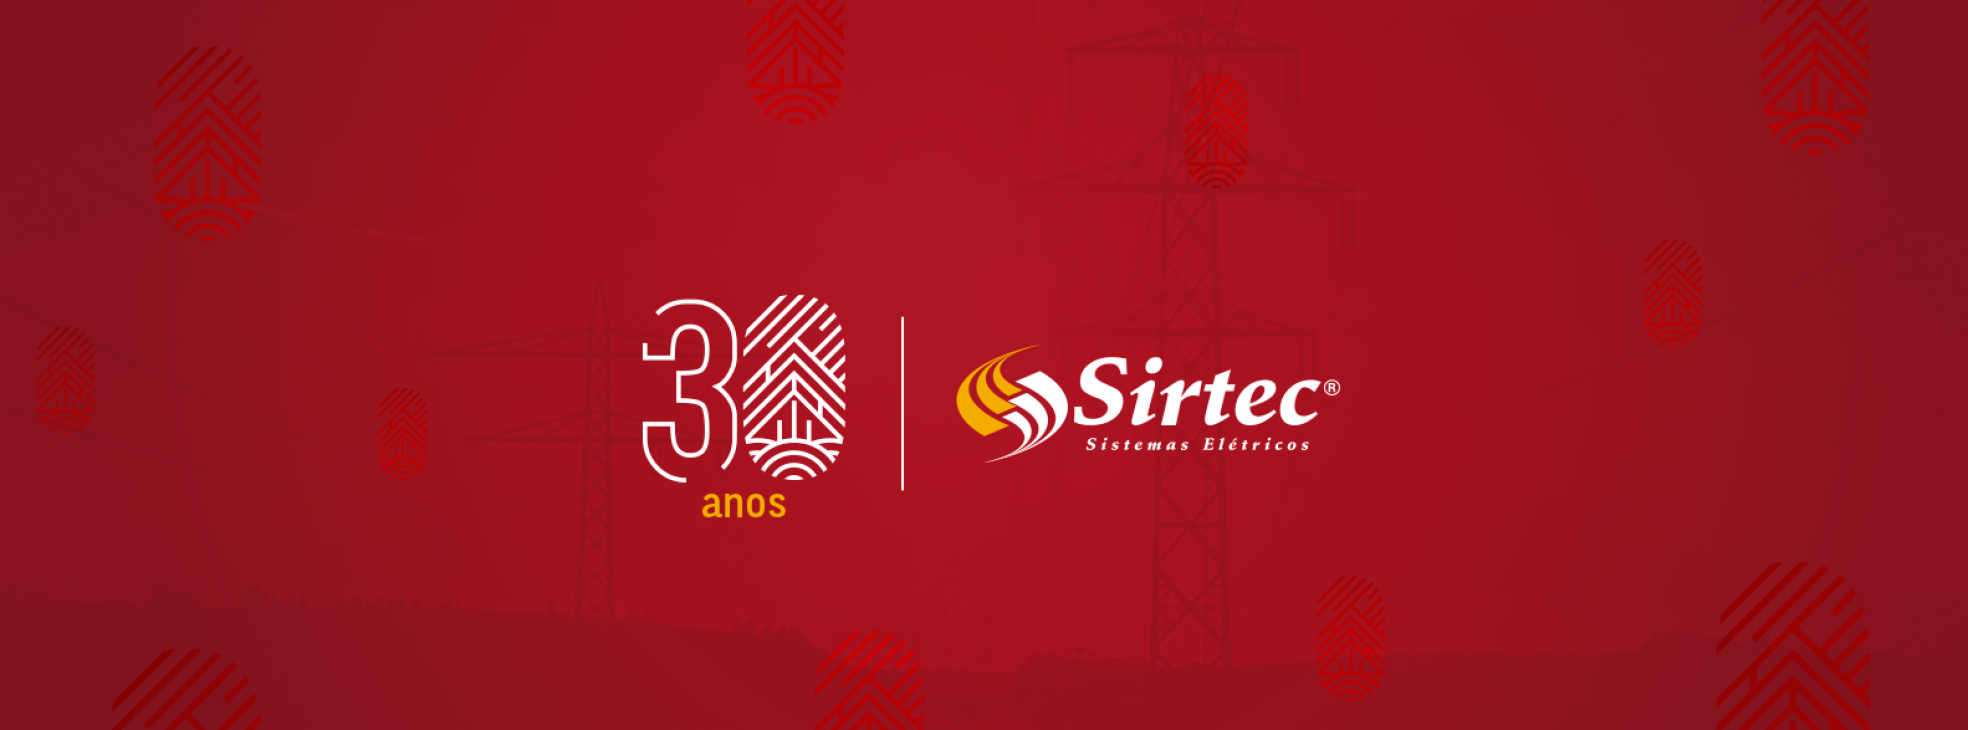 Selo comemorativo 30 anos Sirtec